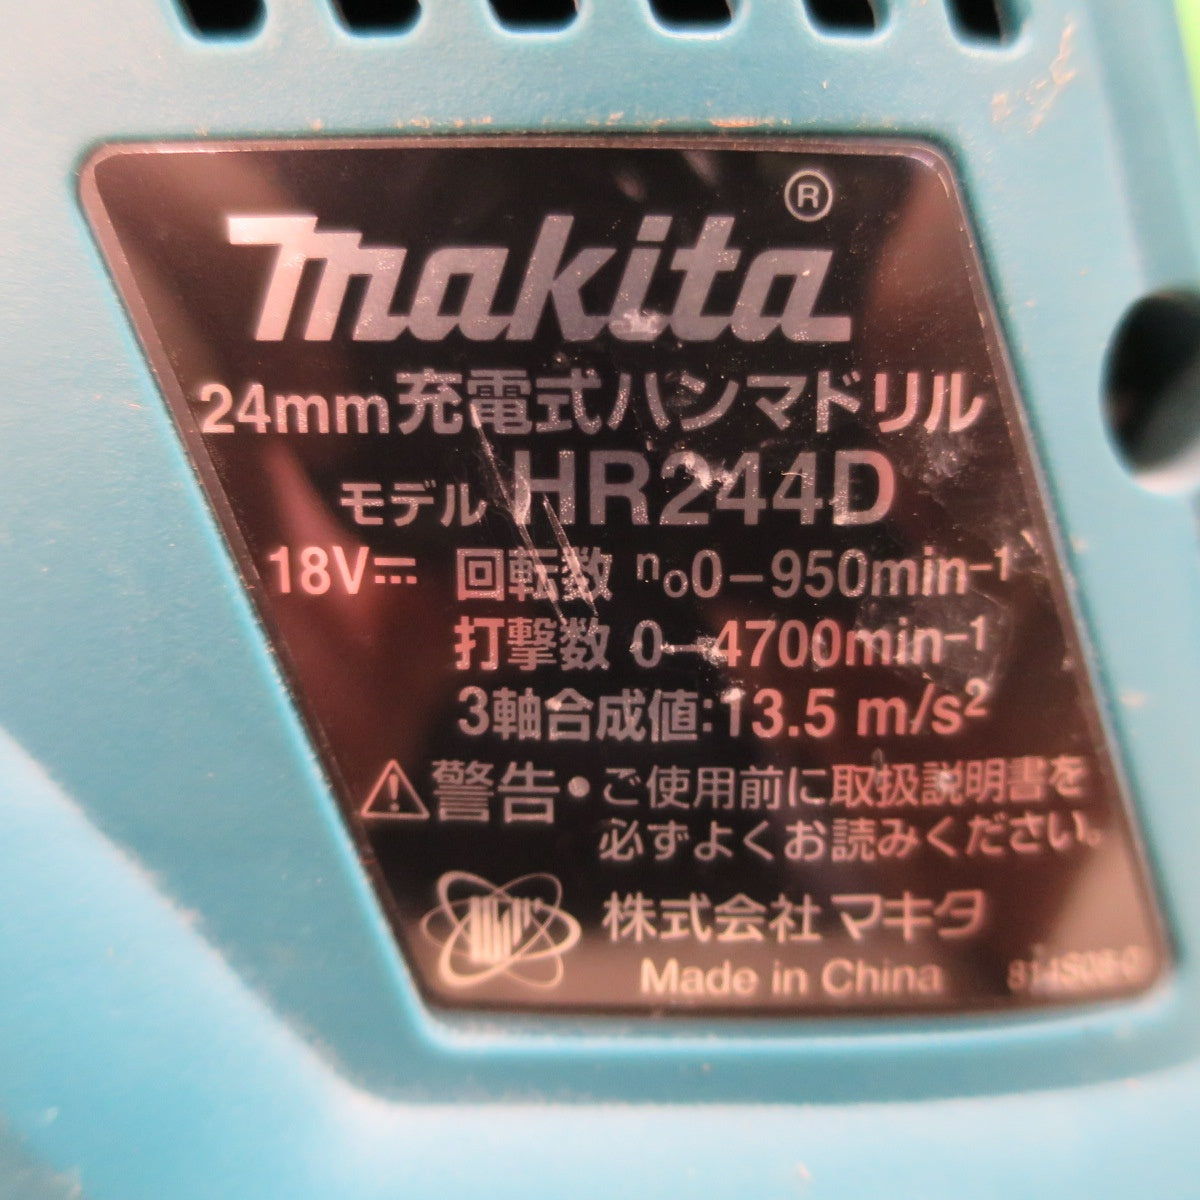 [送料無料] バッテリー2個＆ビット付！キレイ☆マキタ 24mm 充電式 ハンマドリル HR244D 電動 工具 ハンマードリル☆